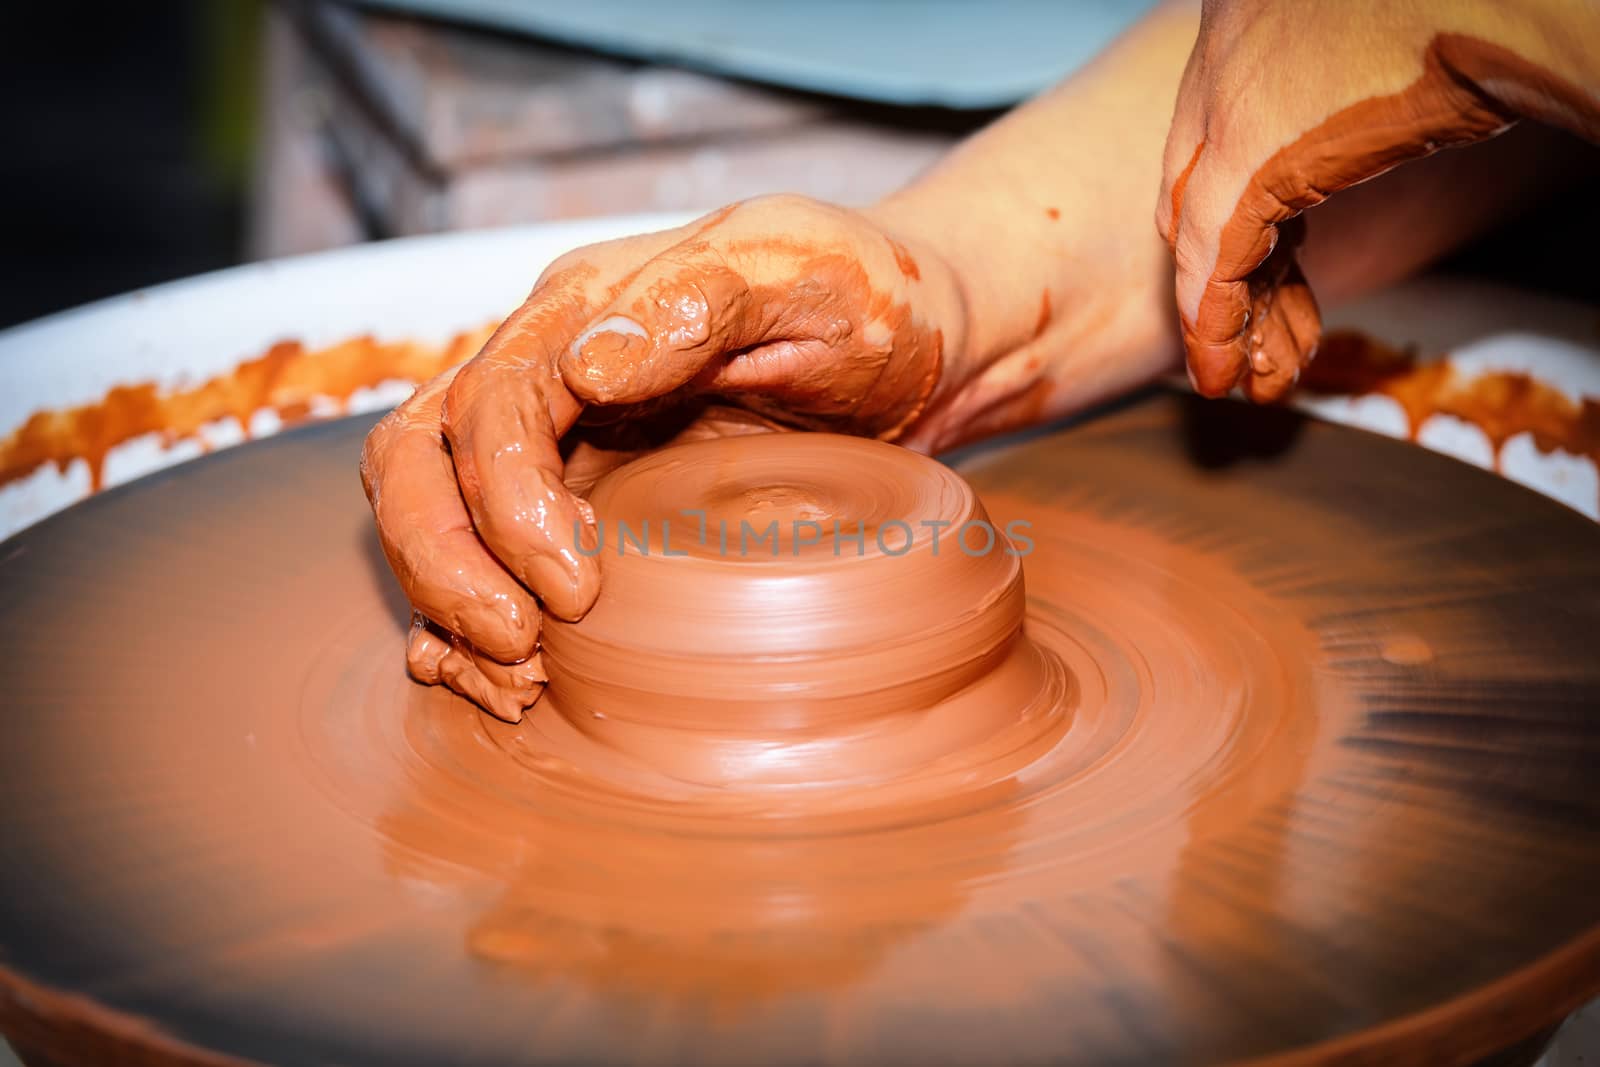 Pottery handmade by Roka